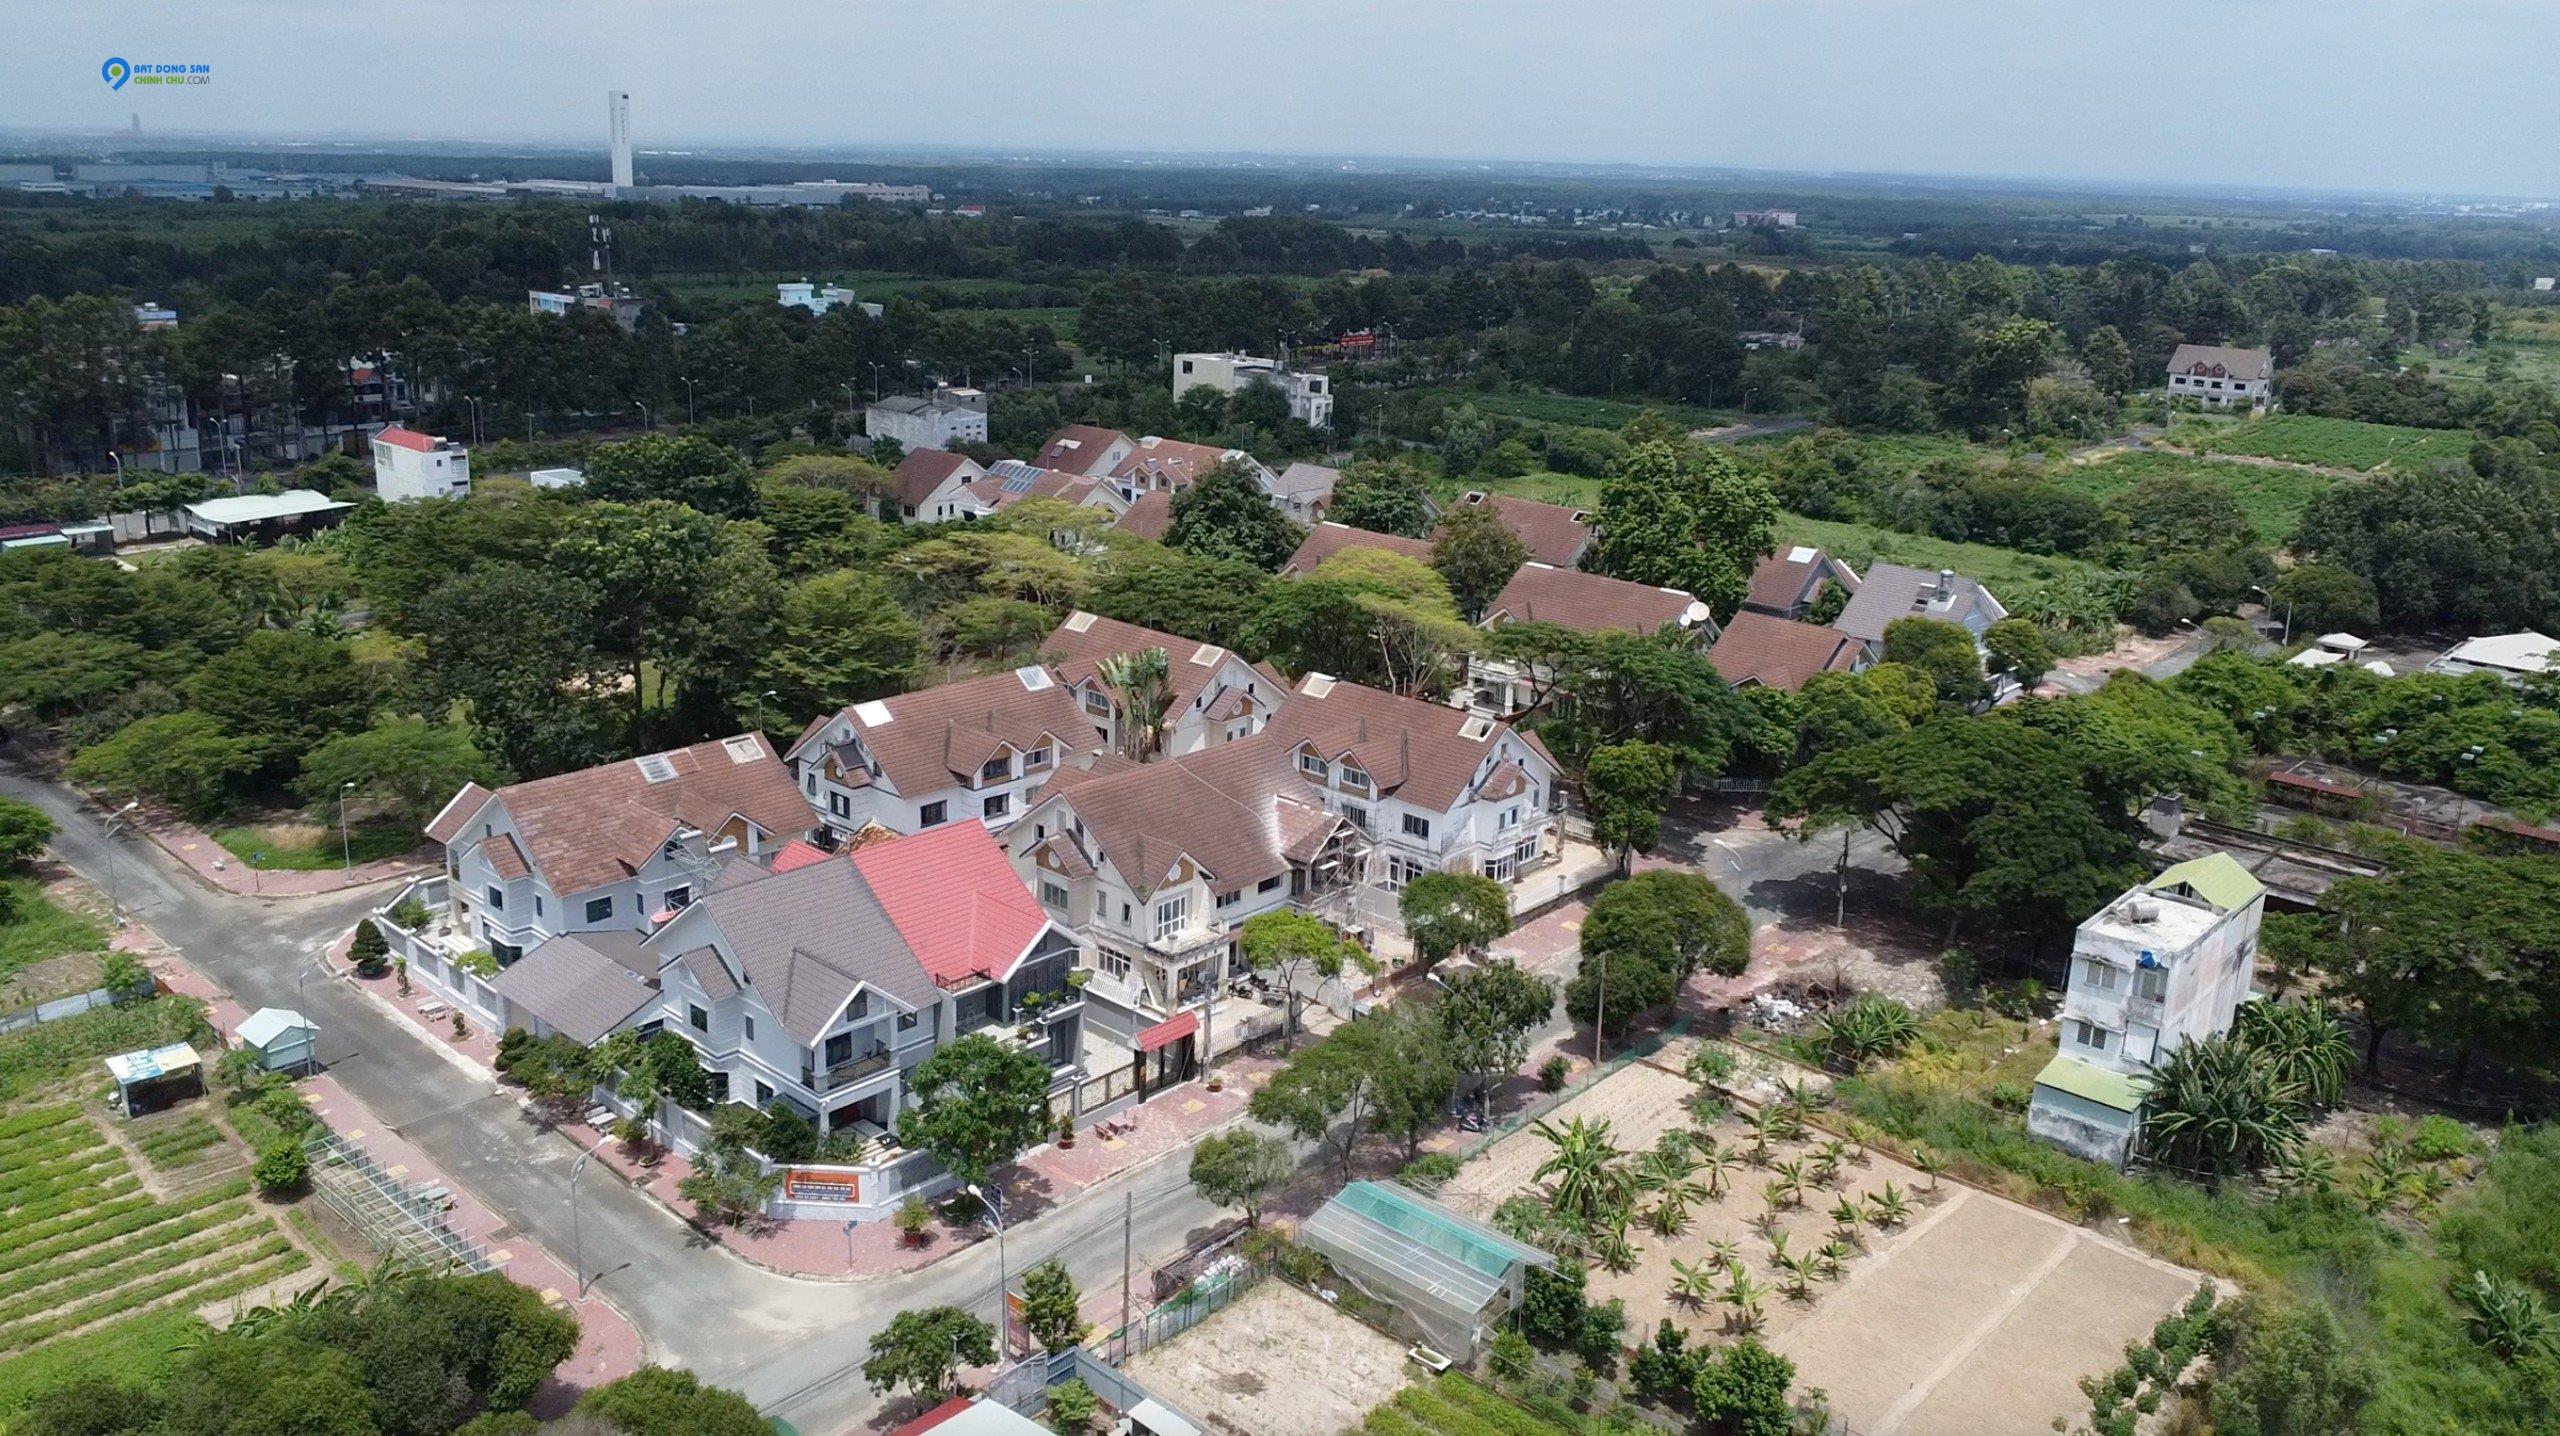 Saigonland Nhơn Trạch - Mua bán đất Dự án Hud Nhơn Trạch Đồng Nai và Đất Nền Nhơn Trạch